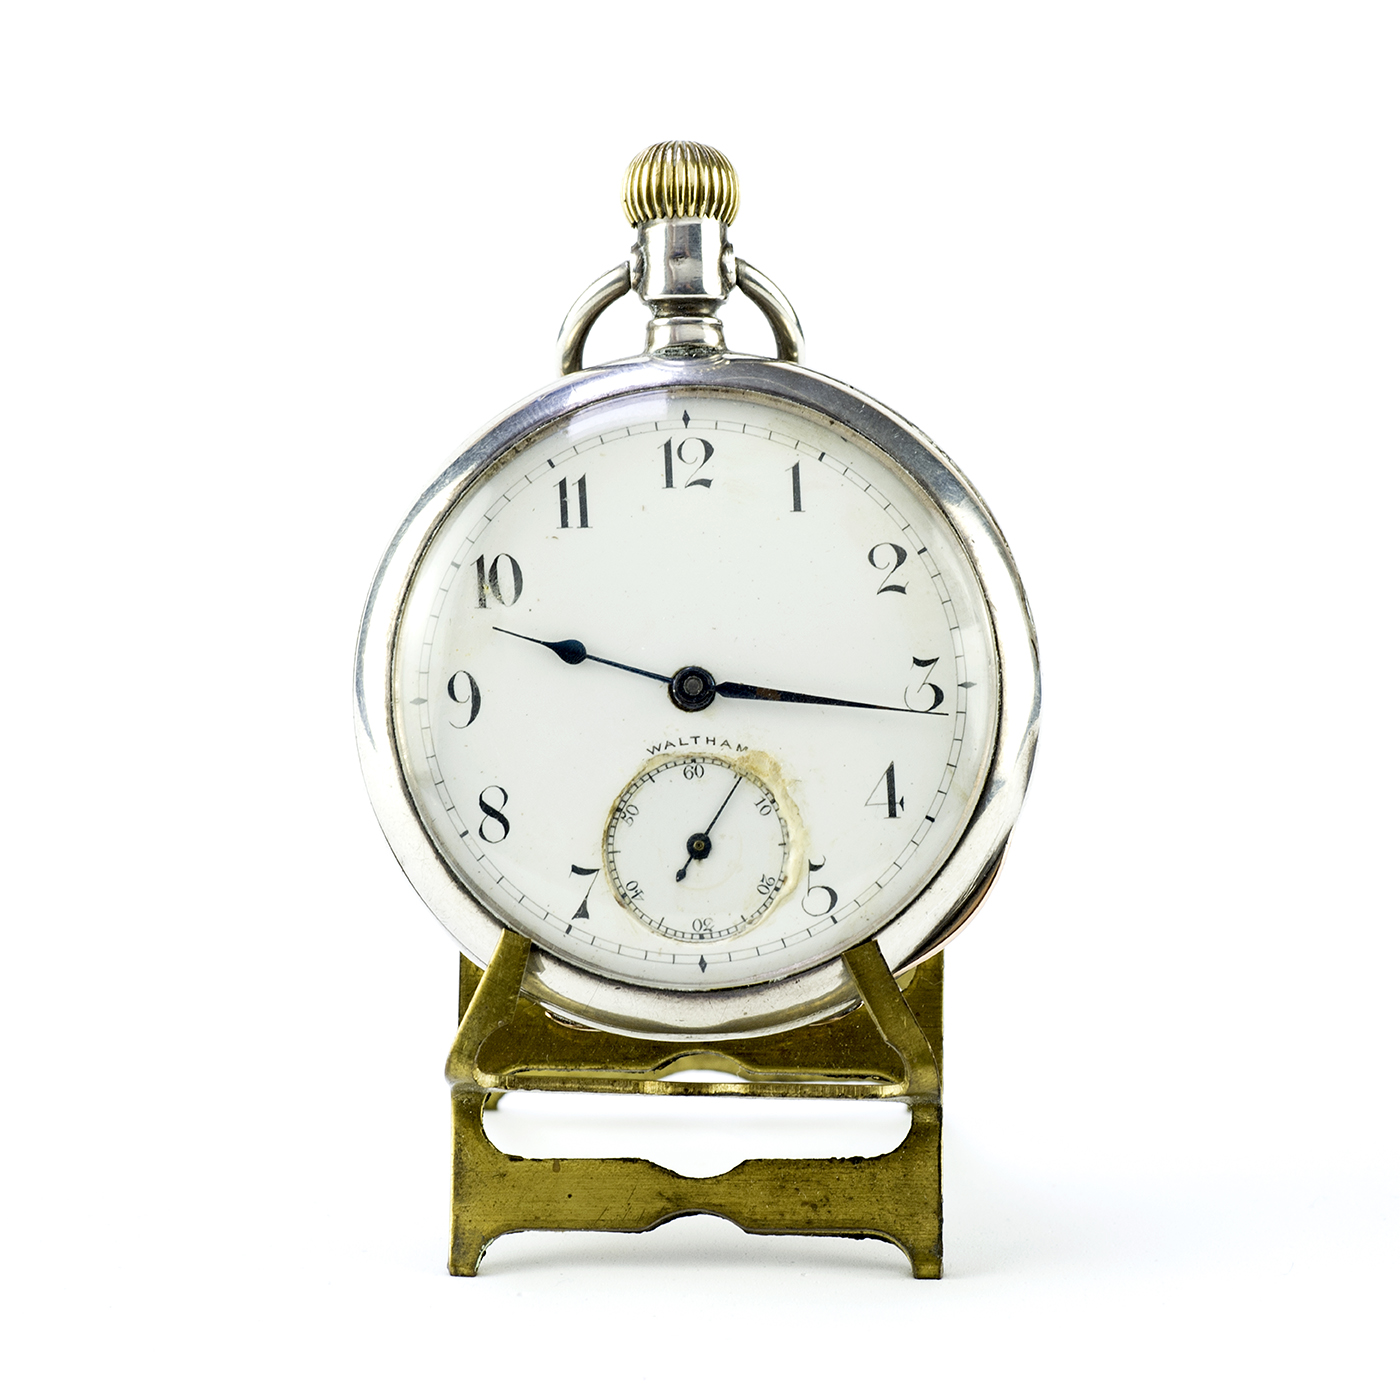 WALTHAM. Reloj de bolsillo, lepine, remontoir. U.S.A, 1895.